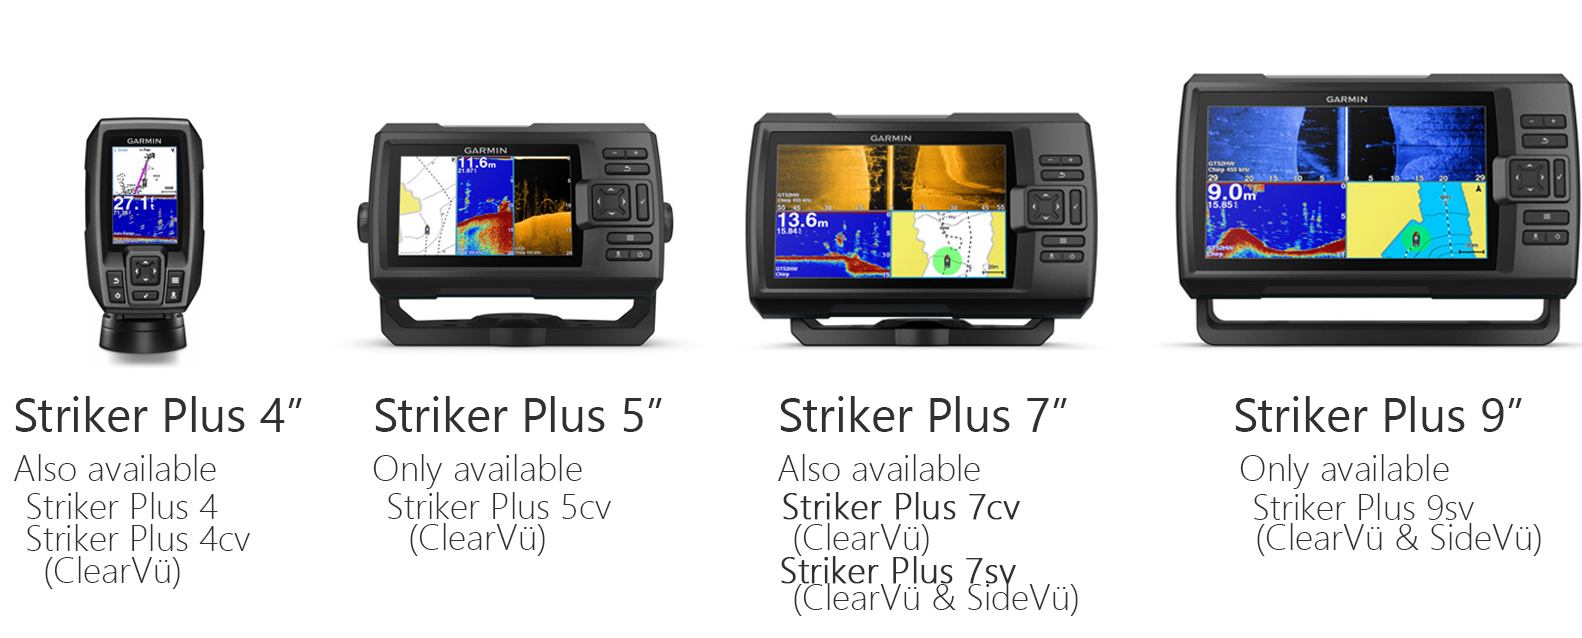 Striker Plus Series All models